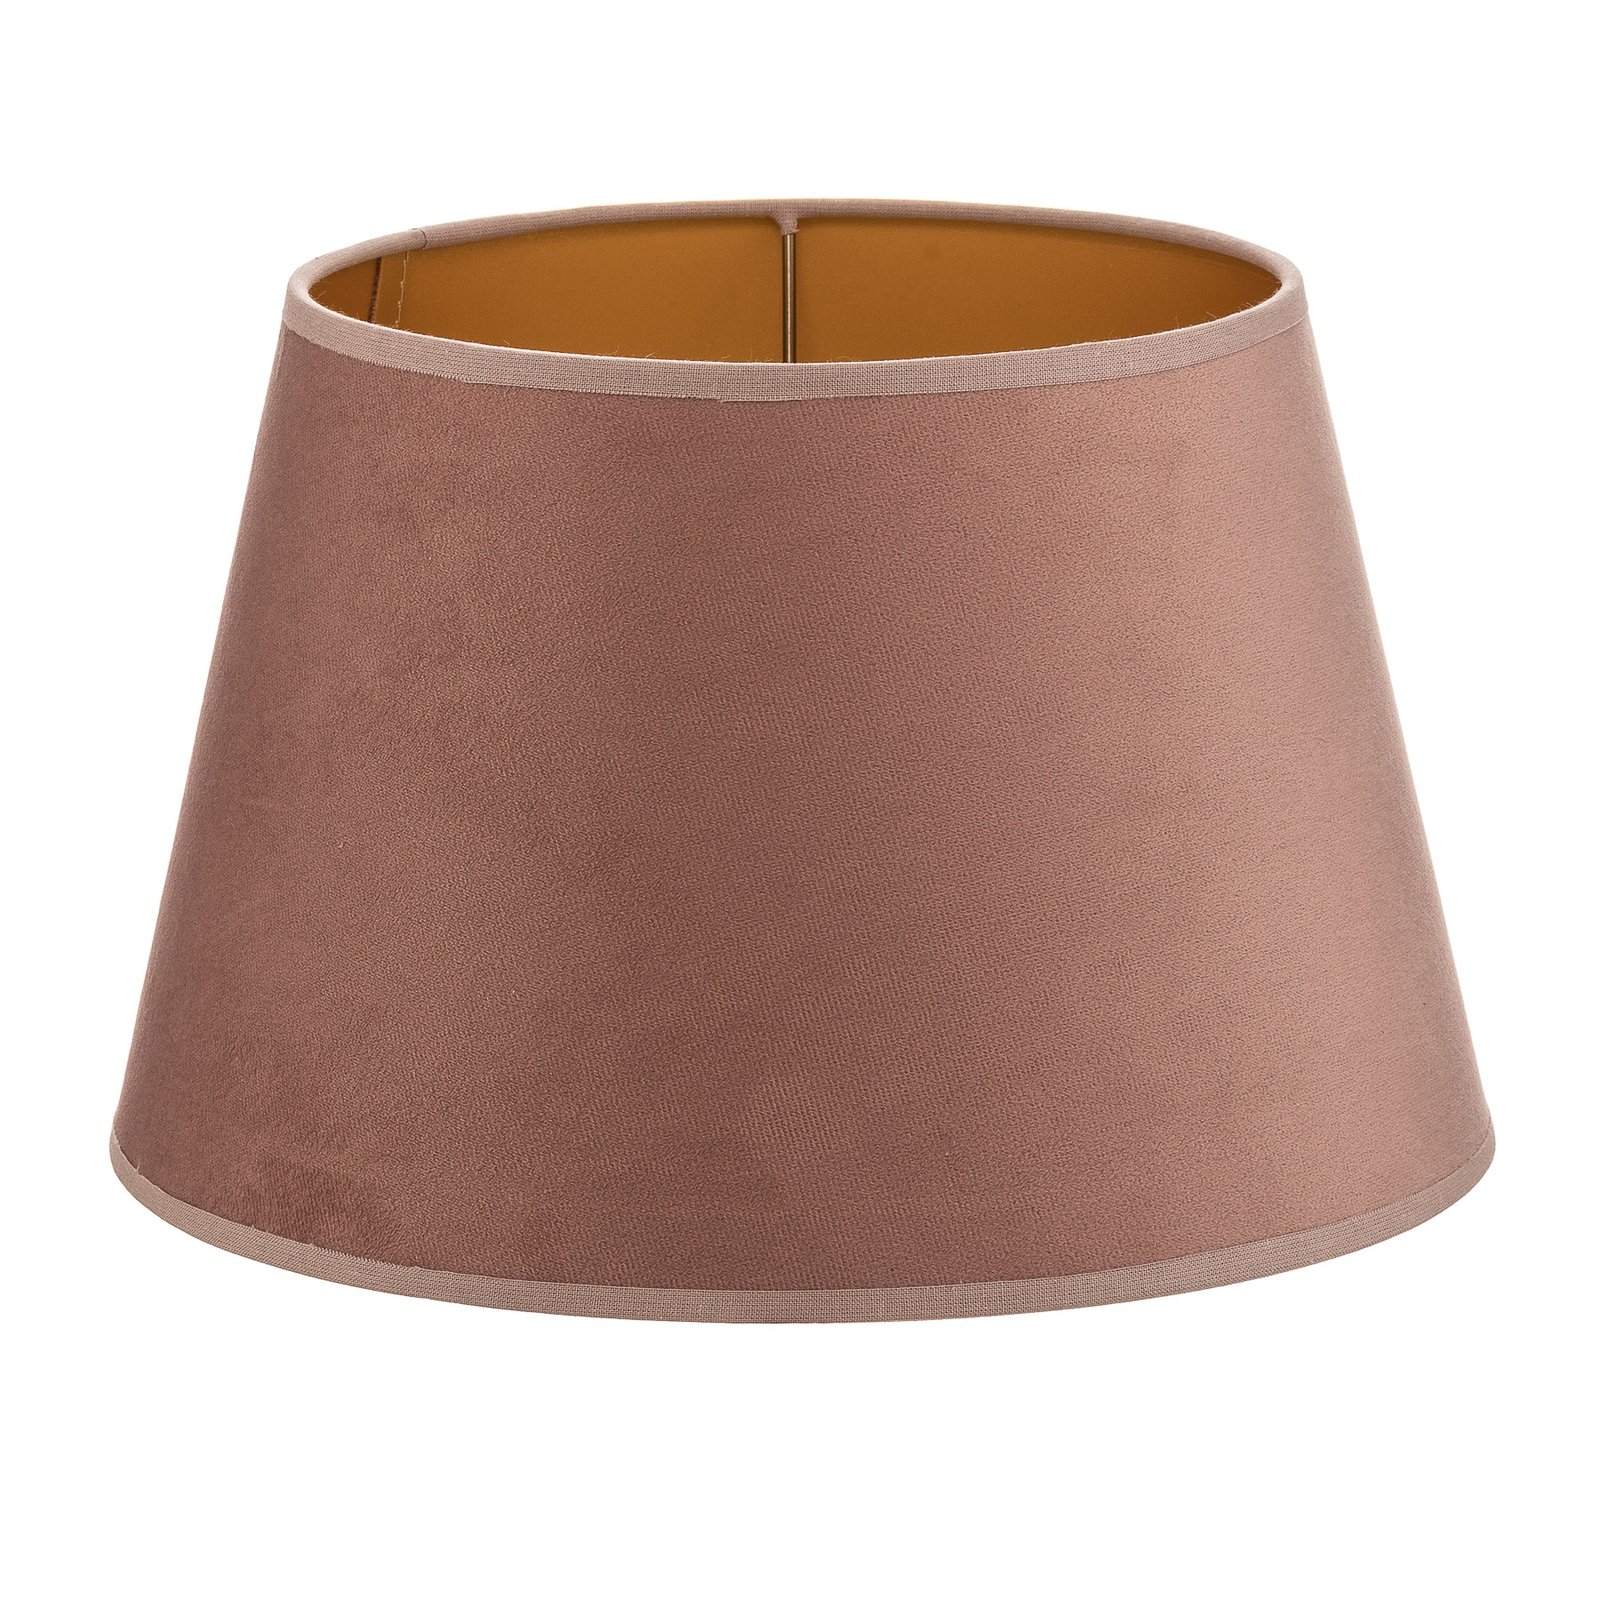 Cone lámpaernyő 18 cm magas, rózsaszín/arany